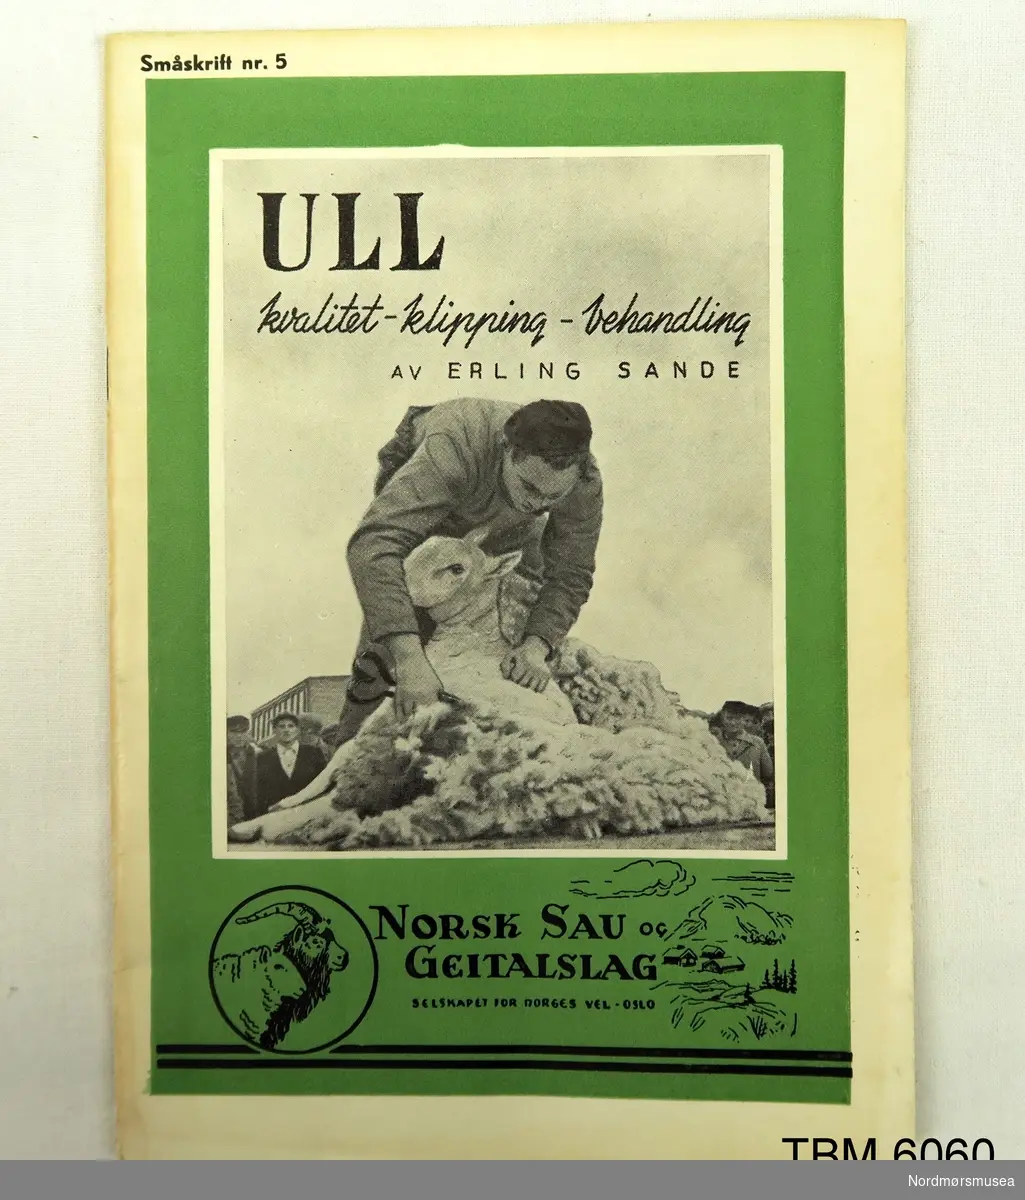 Illustrert hefte utgitt av Dahl, Mathisen & Co, Oslo. Skrive av Erling Sande. Fortel om korleis ull skal behandlast.
Utapå bilete av ein mann som klippar ein sau.